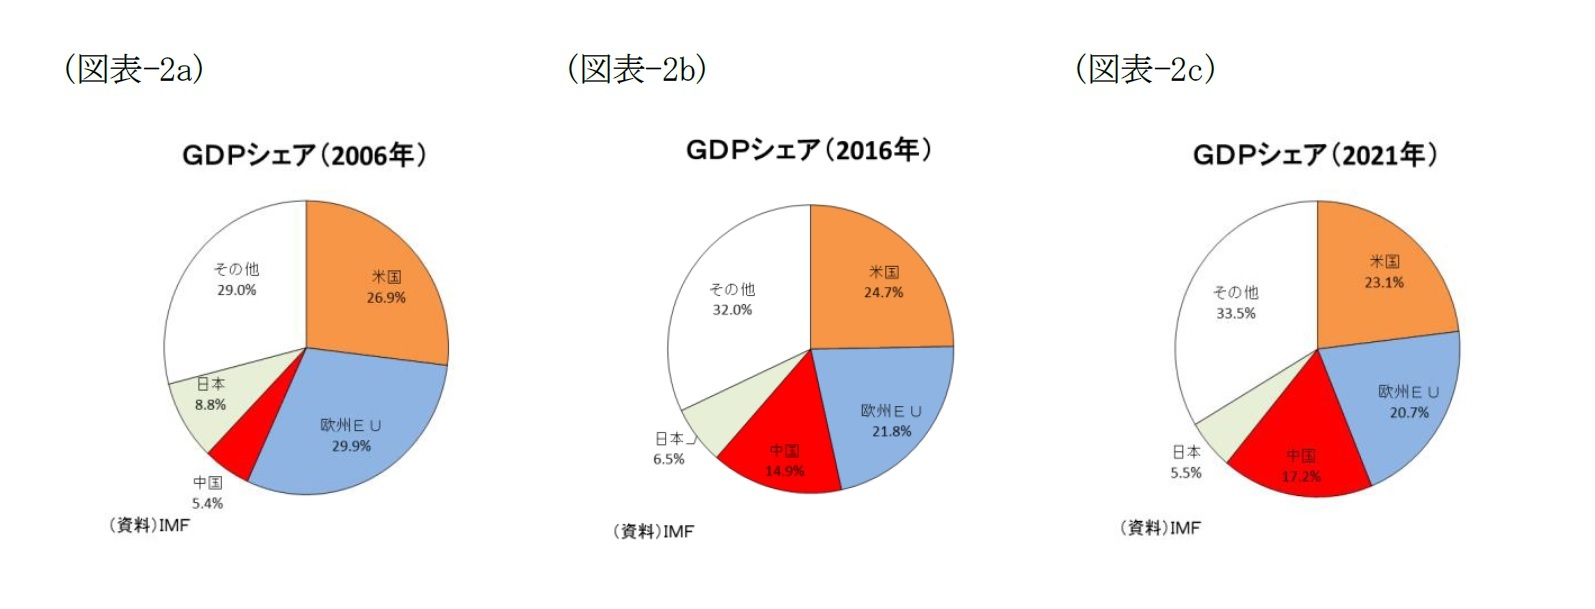 （図表-2a）GDPシェア(2006年)/（図表-2b）GDPシェア(2016年)/（図表-2a）GDPシェア(2021年)